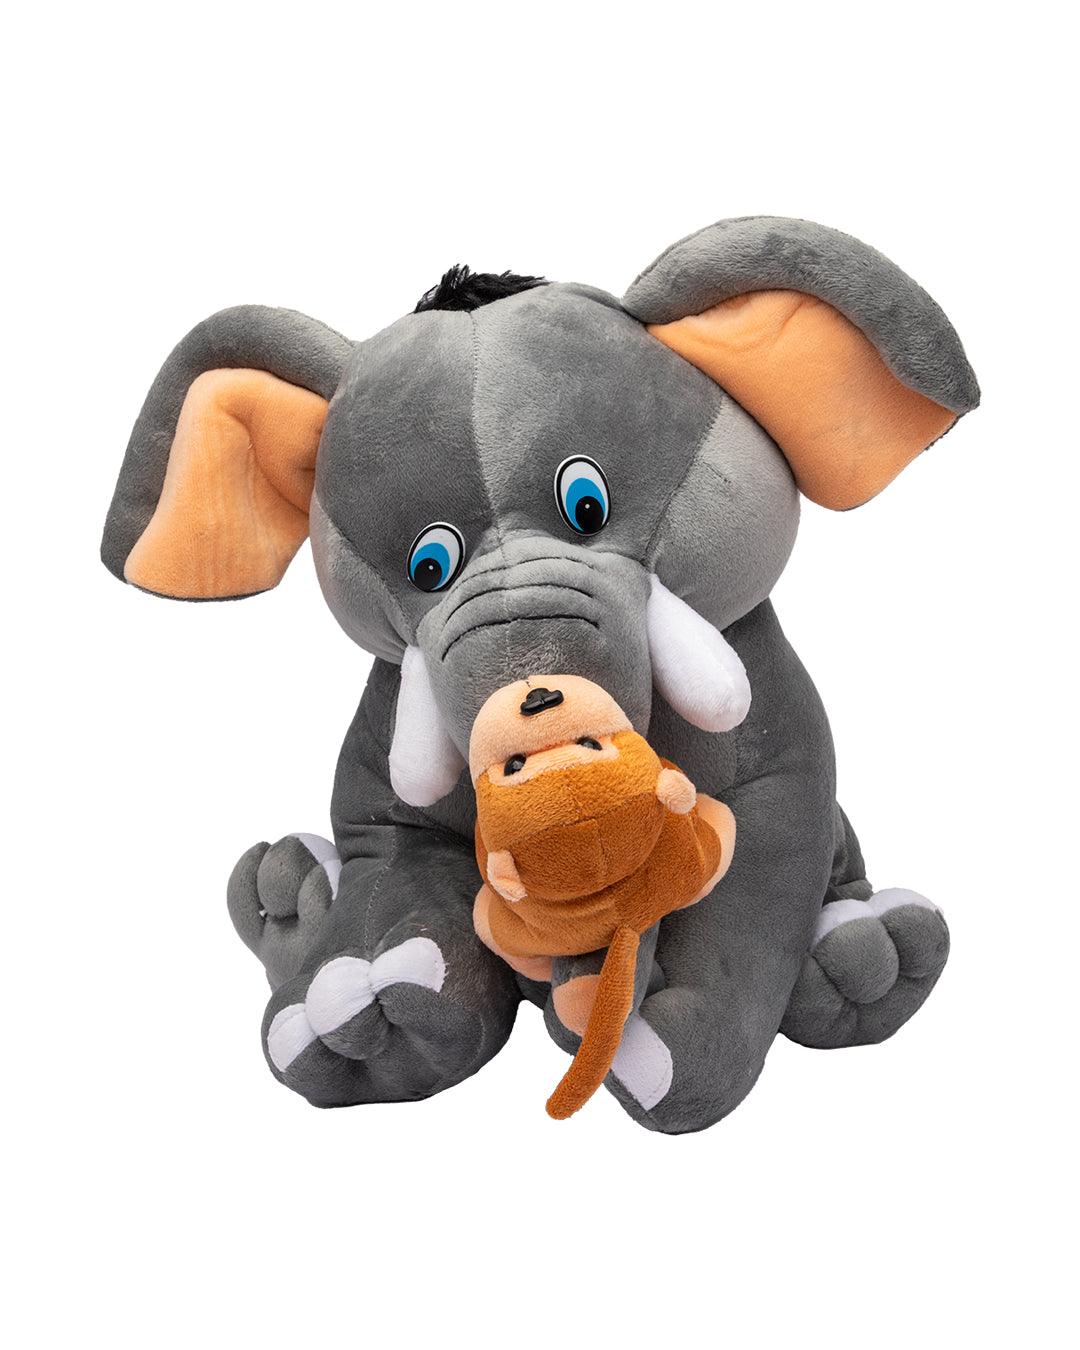 Elephant with Monkey, Plush Toy, Grey, Polyester - MARKET 99